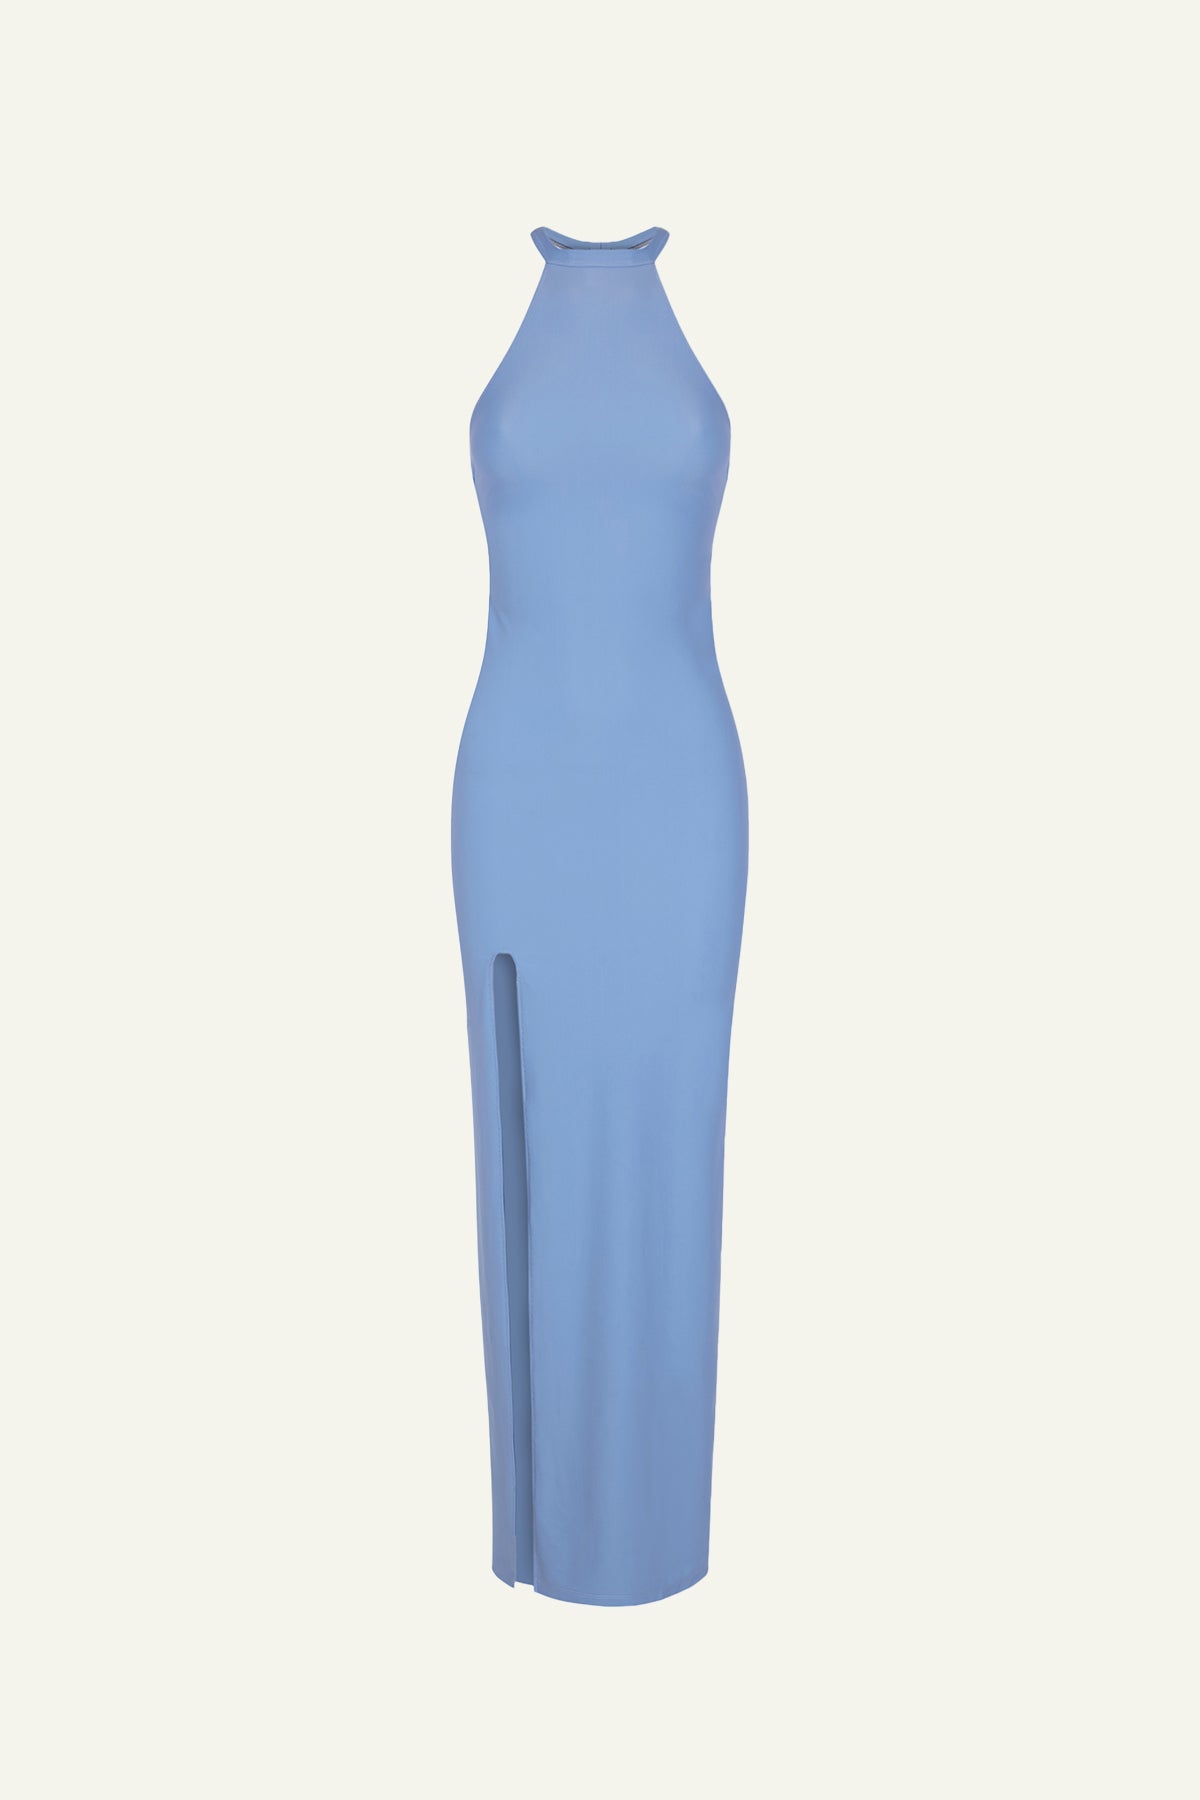 
                  
                    OLIVIA HALTER DRESS -  AQUA (BLUE) - (Limited Edition- 150 Units)
                  
                